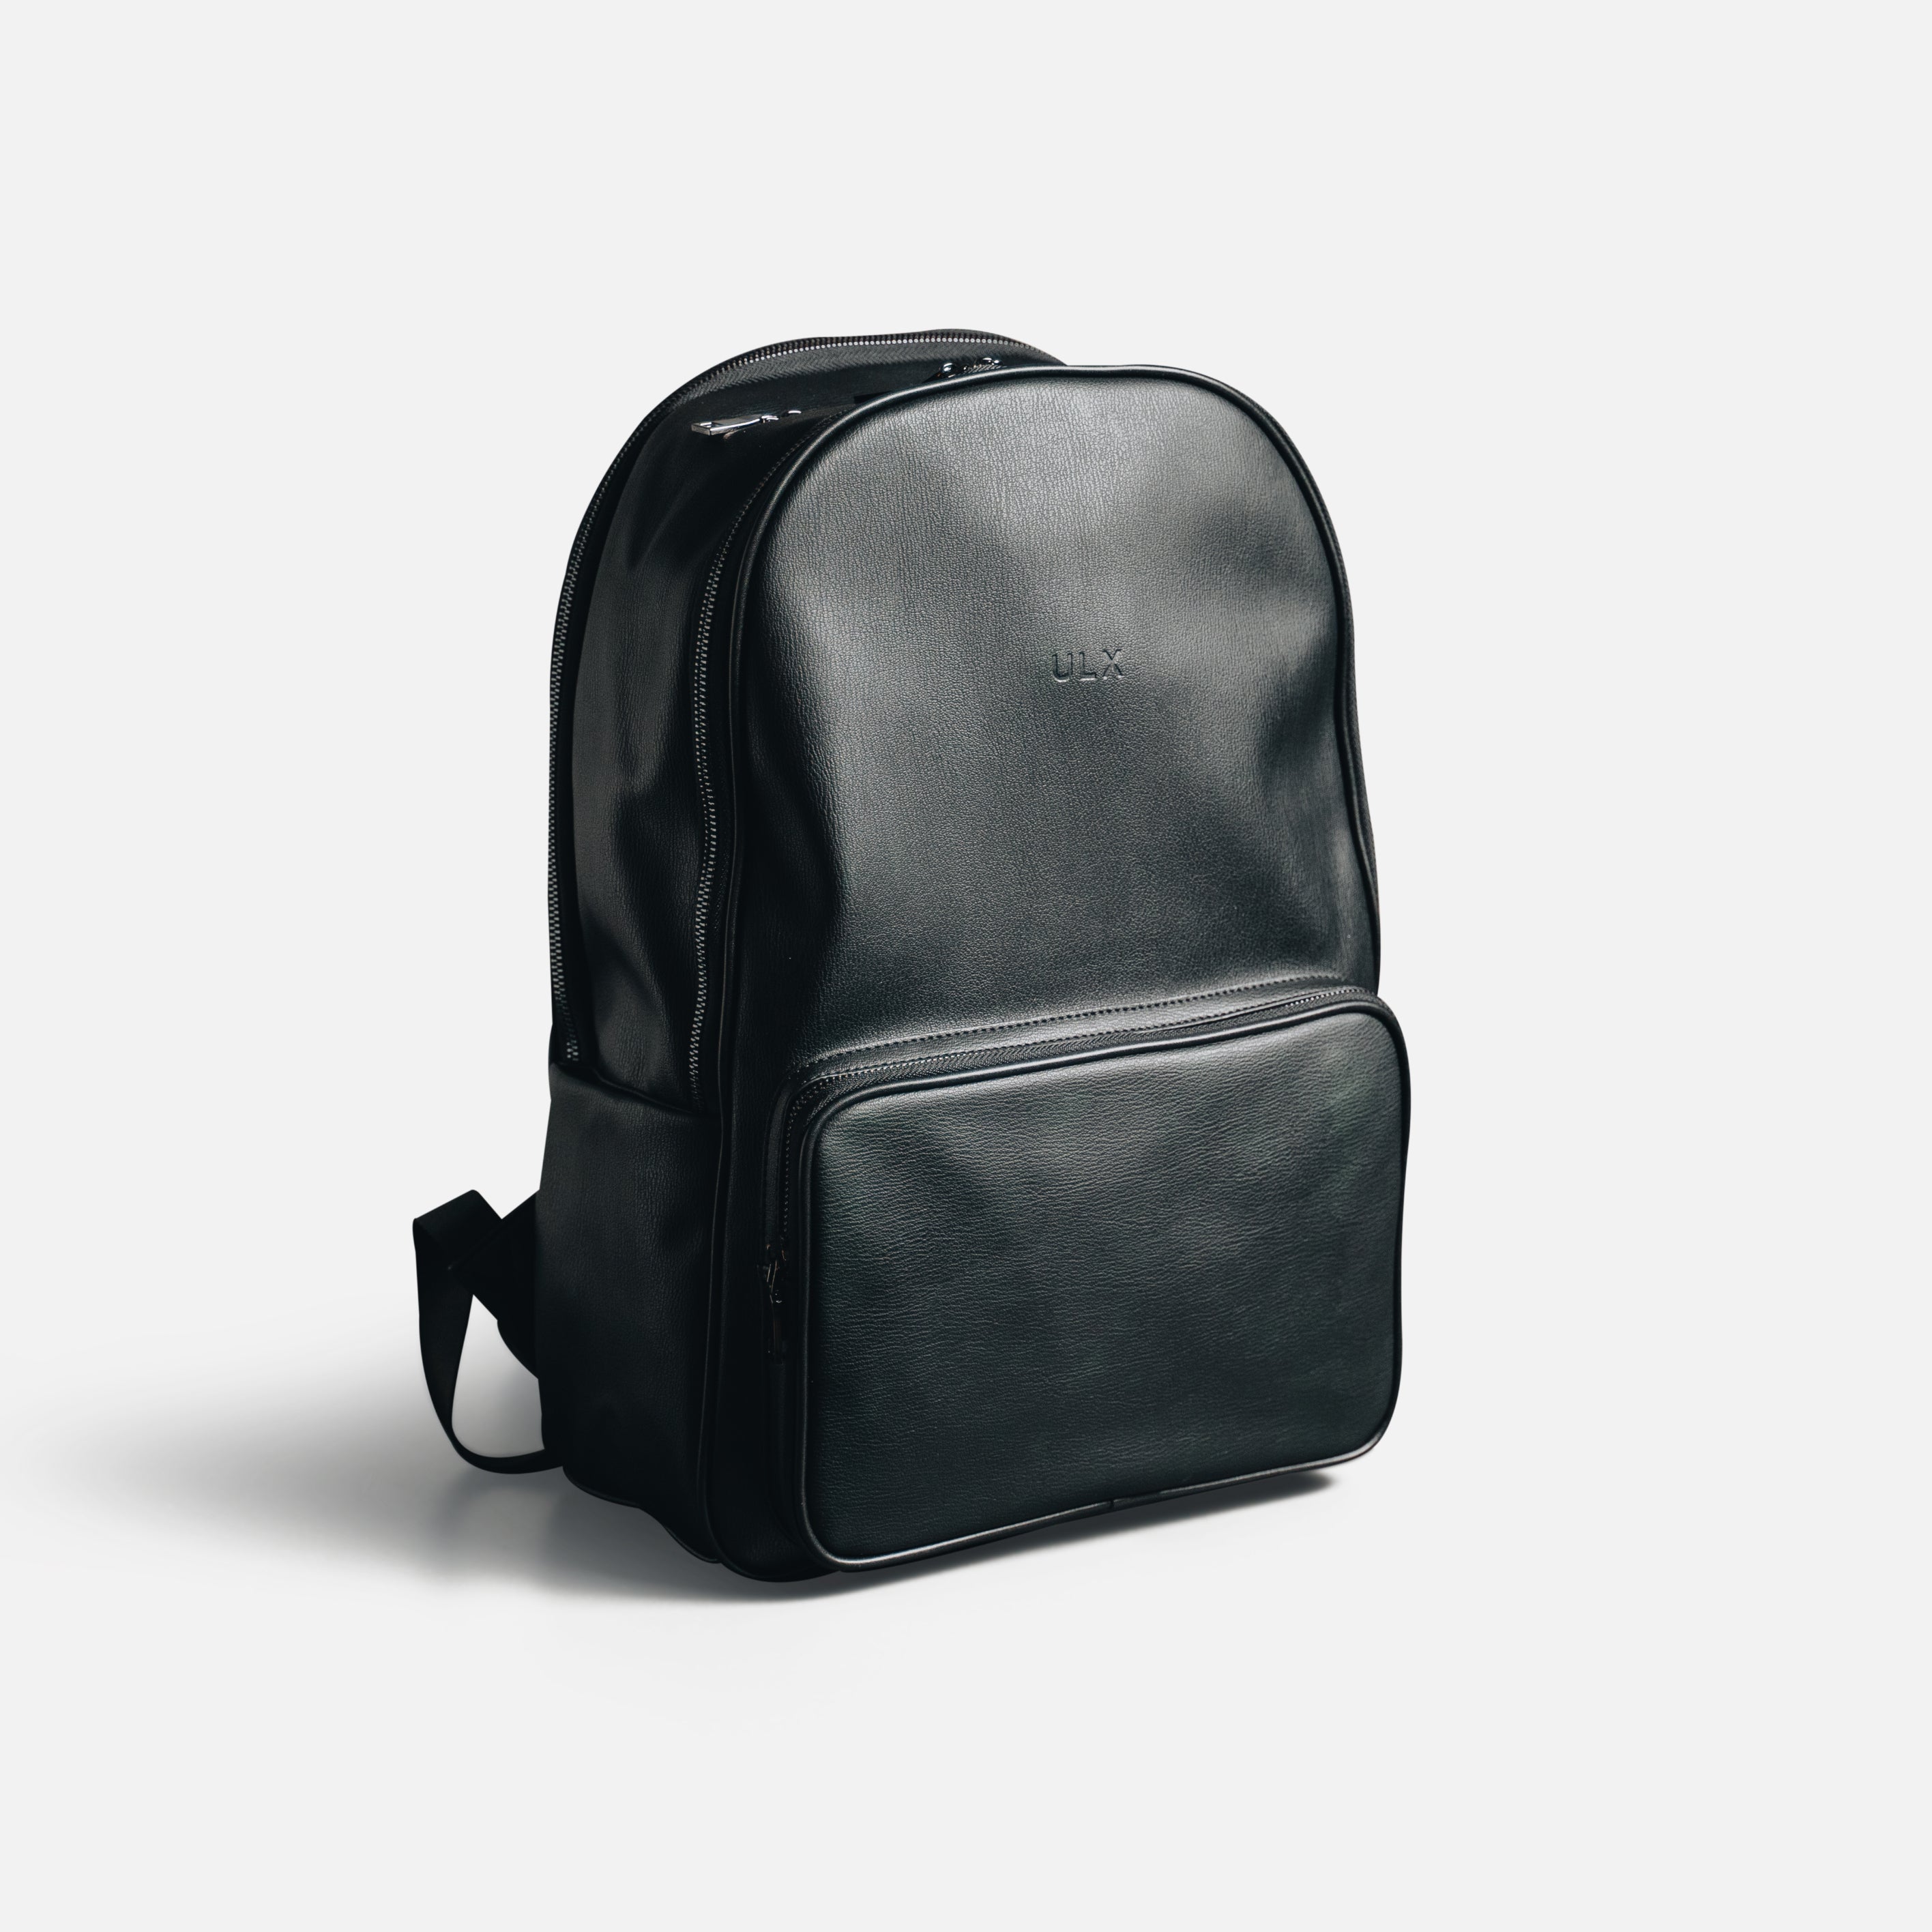 Bag Leather Black Online